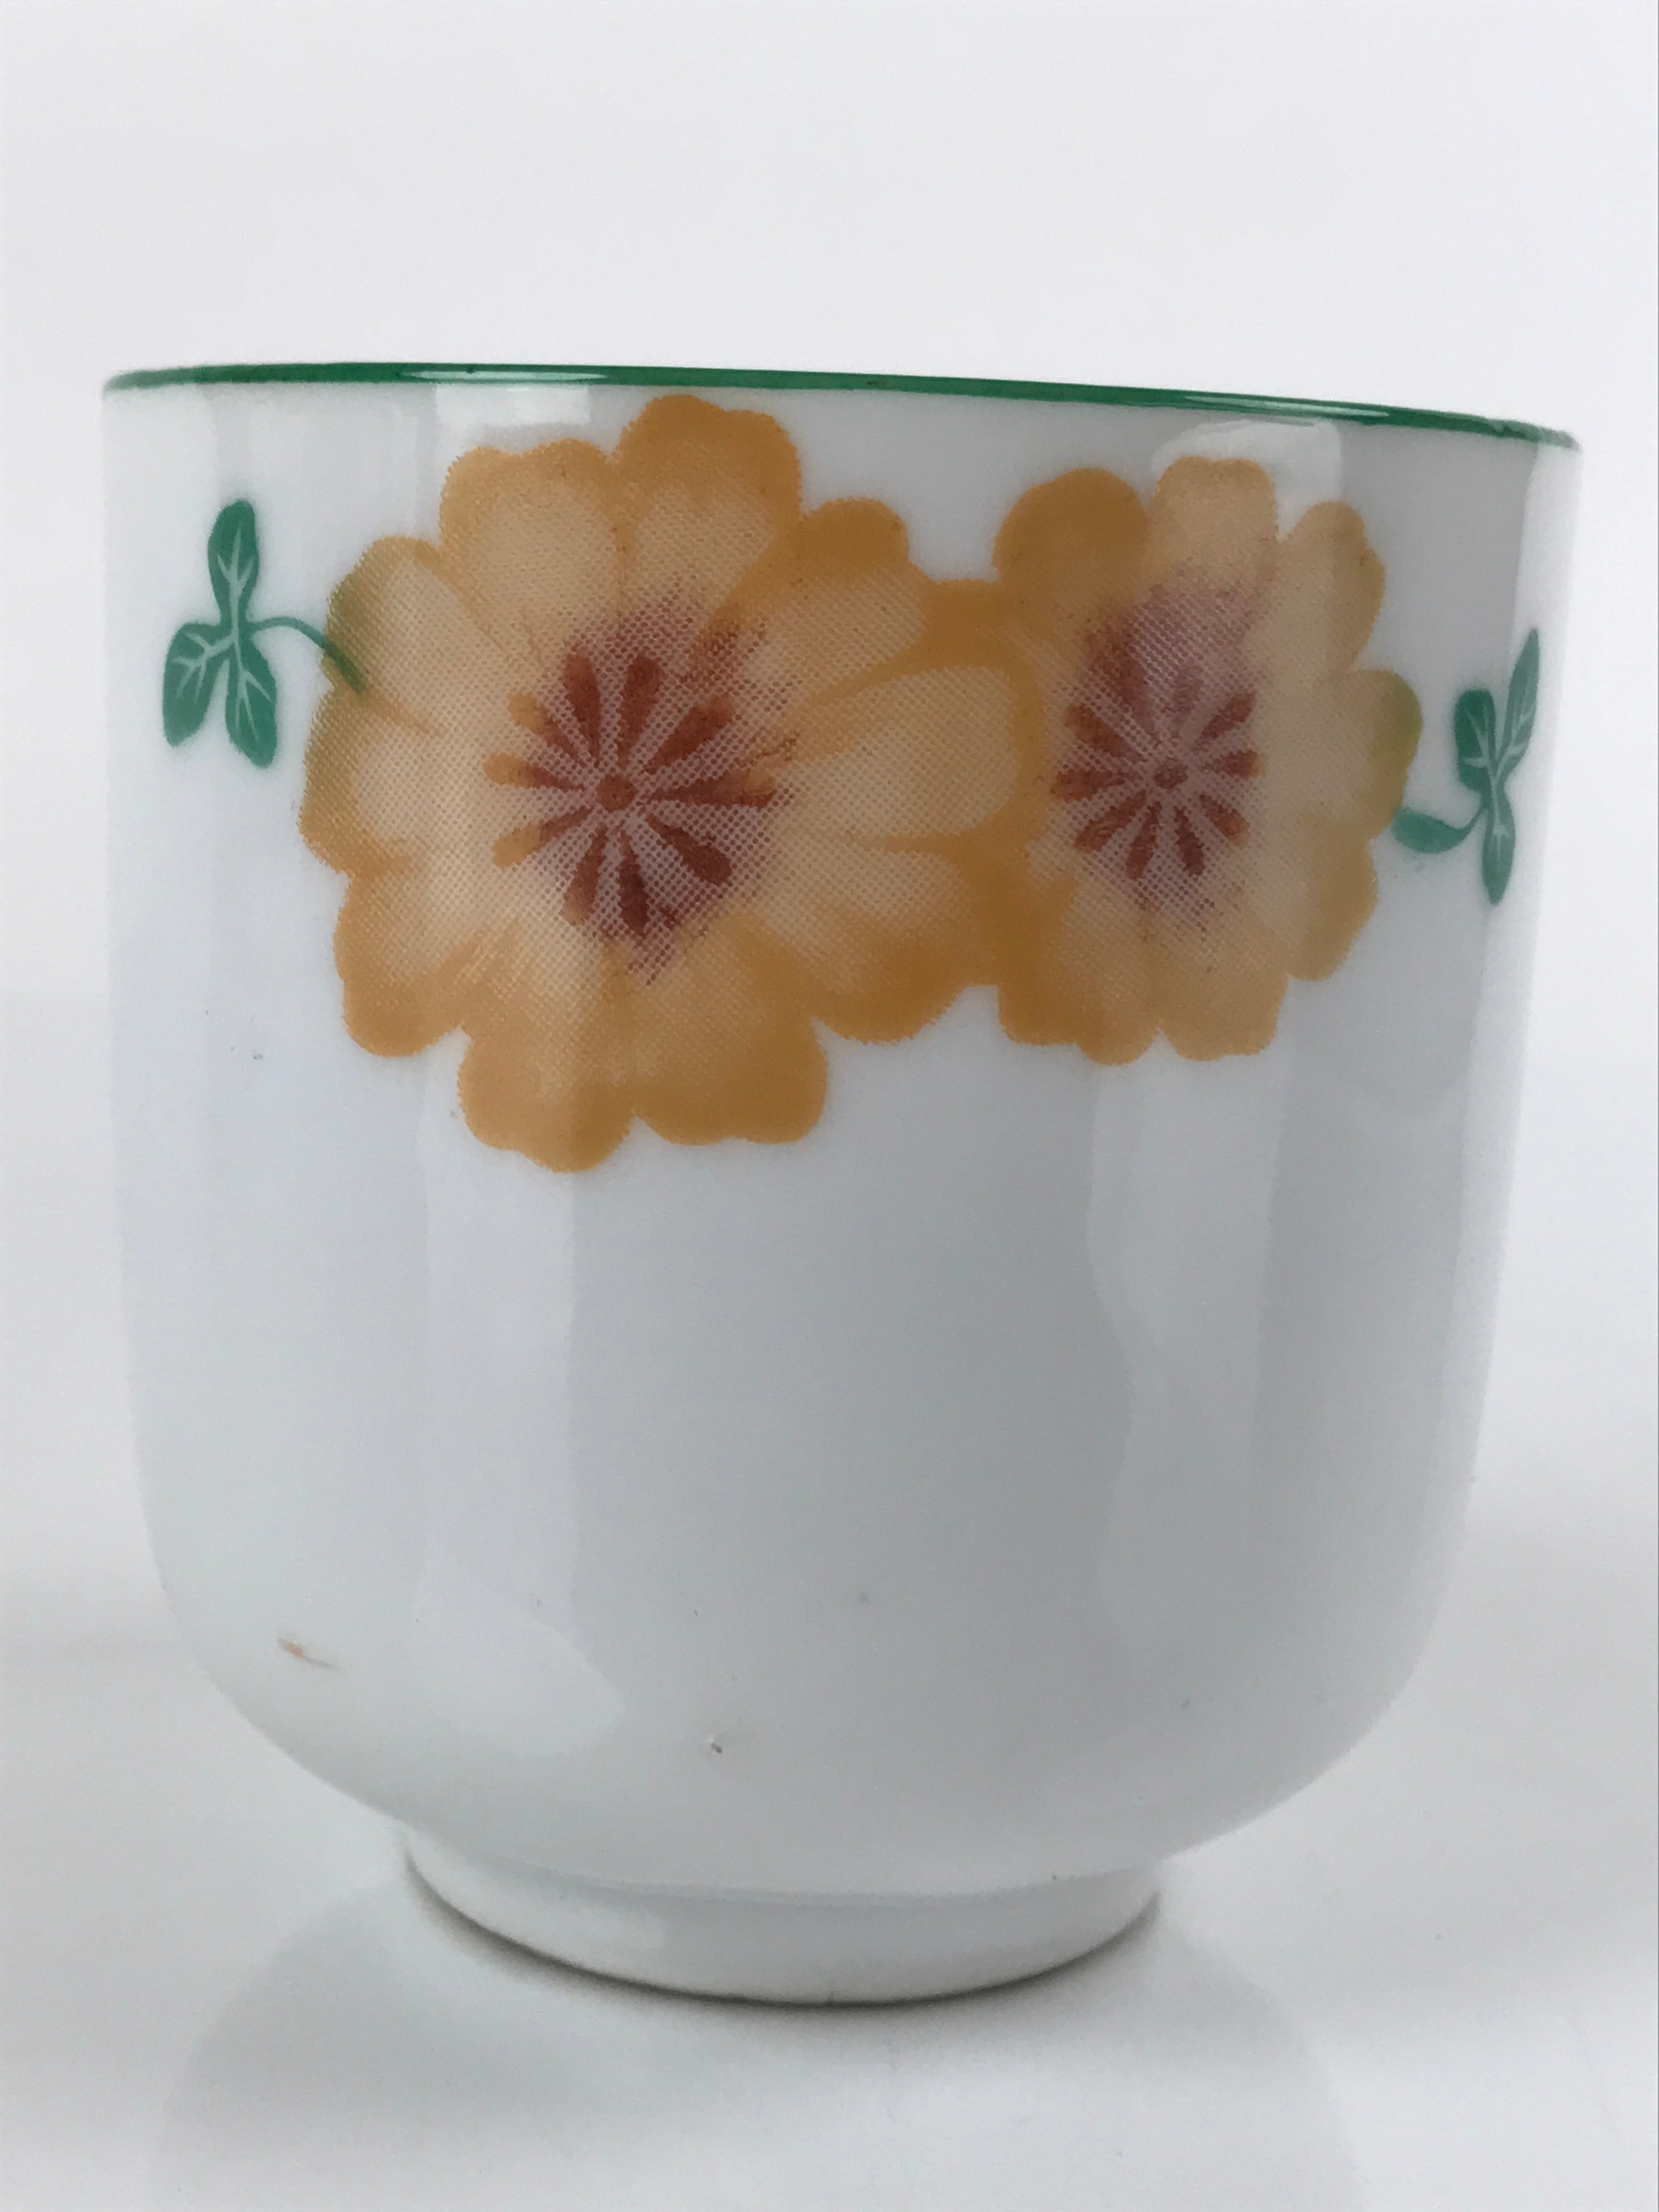 Japanese Porcelain Teacup Vtg Yunomi Orange Flowers Leaves White Sencha TC427